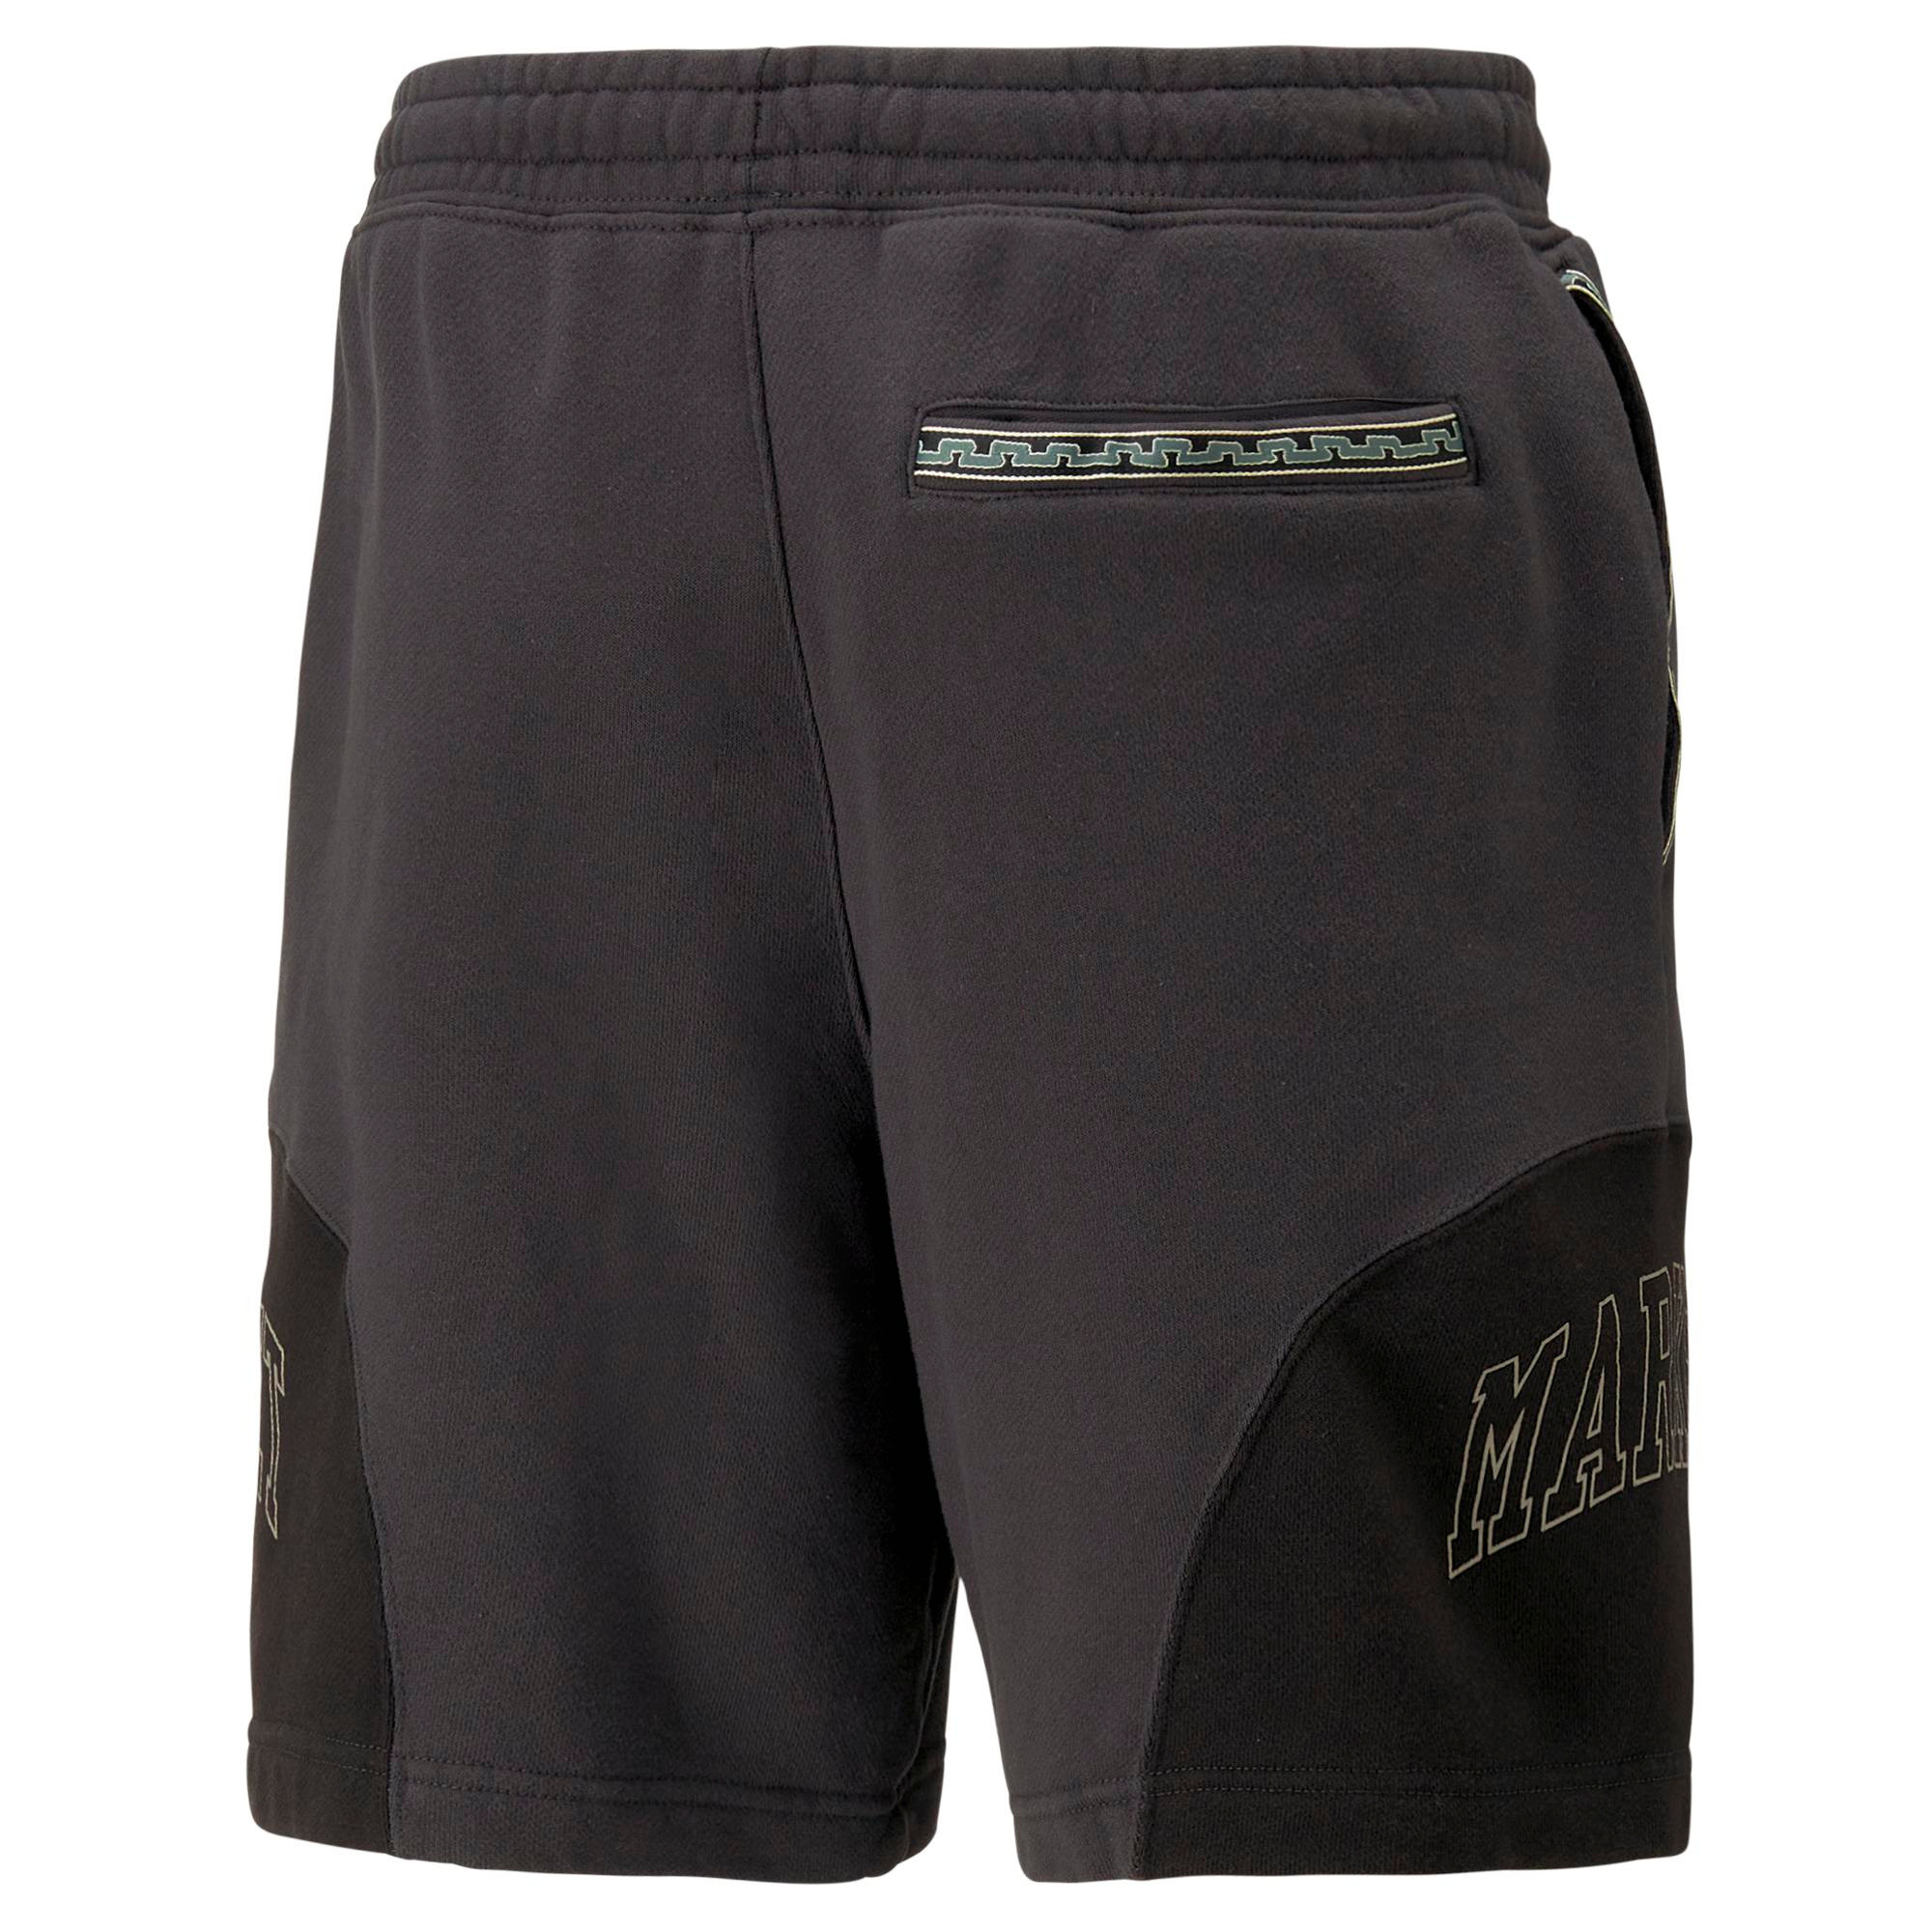 Puma x Market shorts, Black, large image number 1